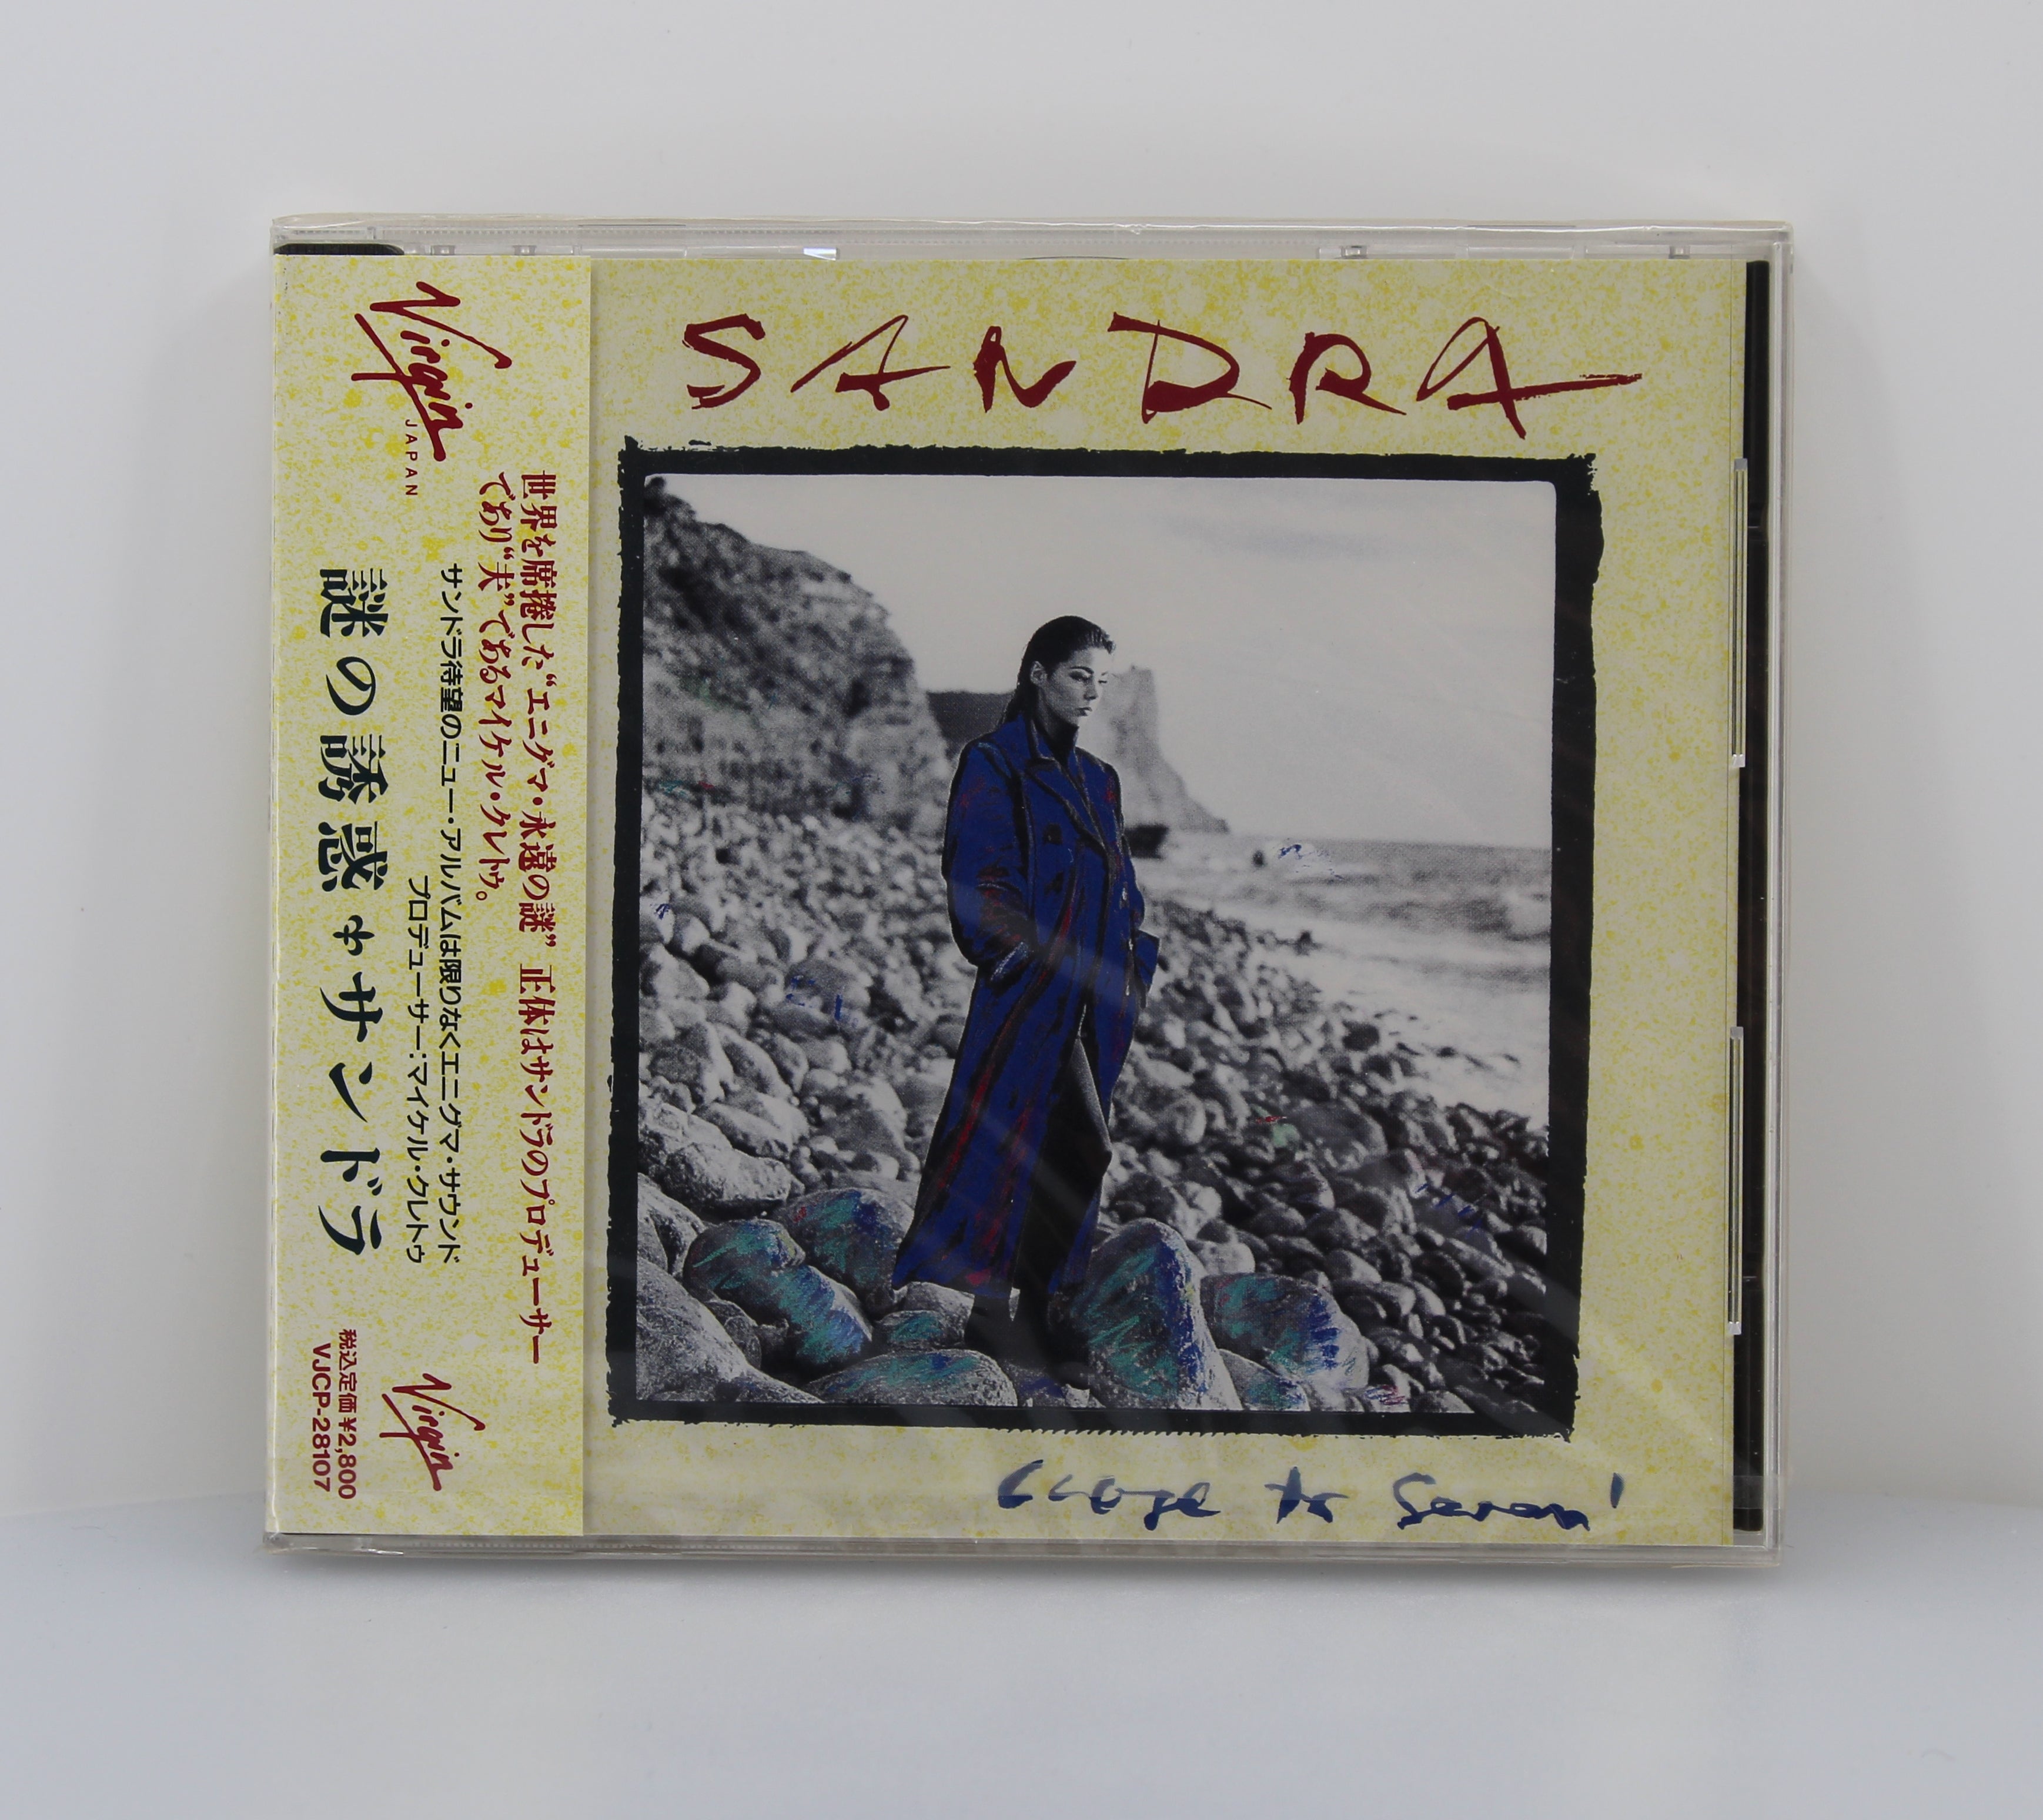 Sandra ‎– Close To Seven, CD, Album, Japan 1992 - preciousvinyl